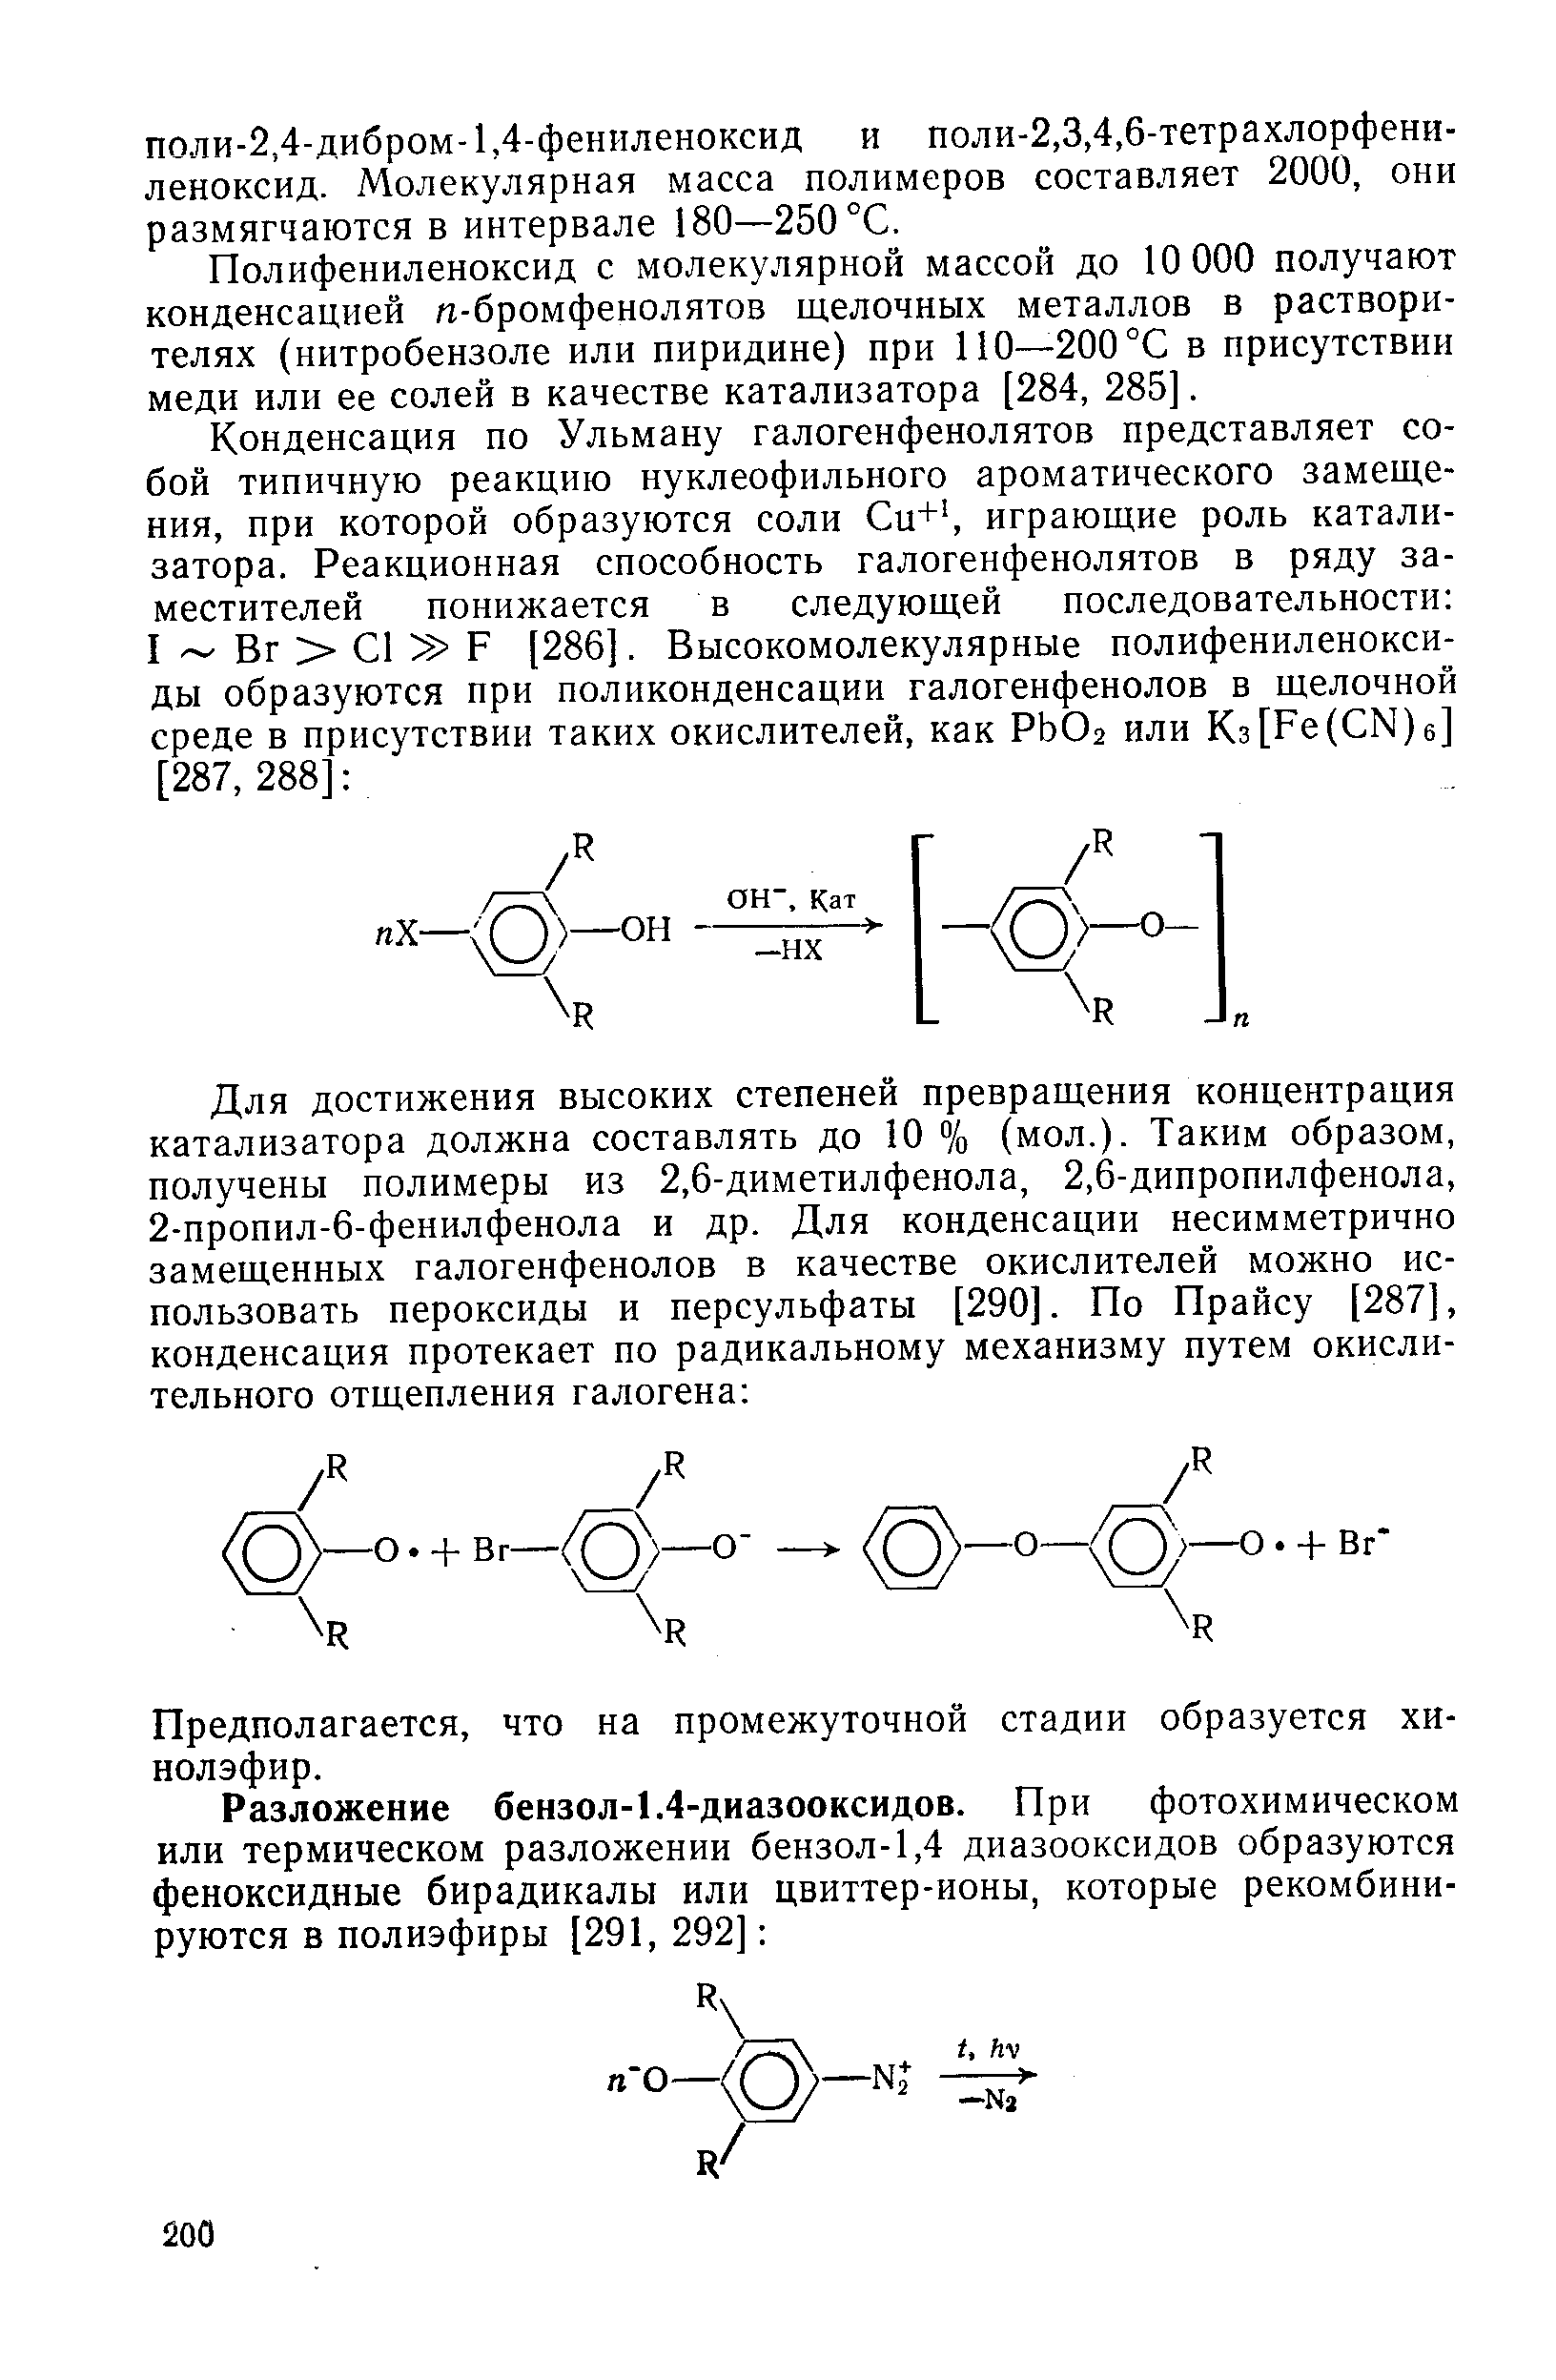 Полифениленоксид с молекулярной массой до 10 000 получают конденсацией л-бромфенолятов щелочных металлов в растворителях (нитробензоле или пиридине) при 110—-200 °С в присутствии меди или ее солей в качестве катализатора [284, 285].